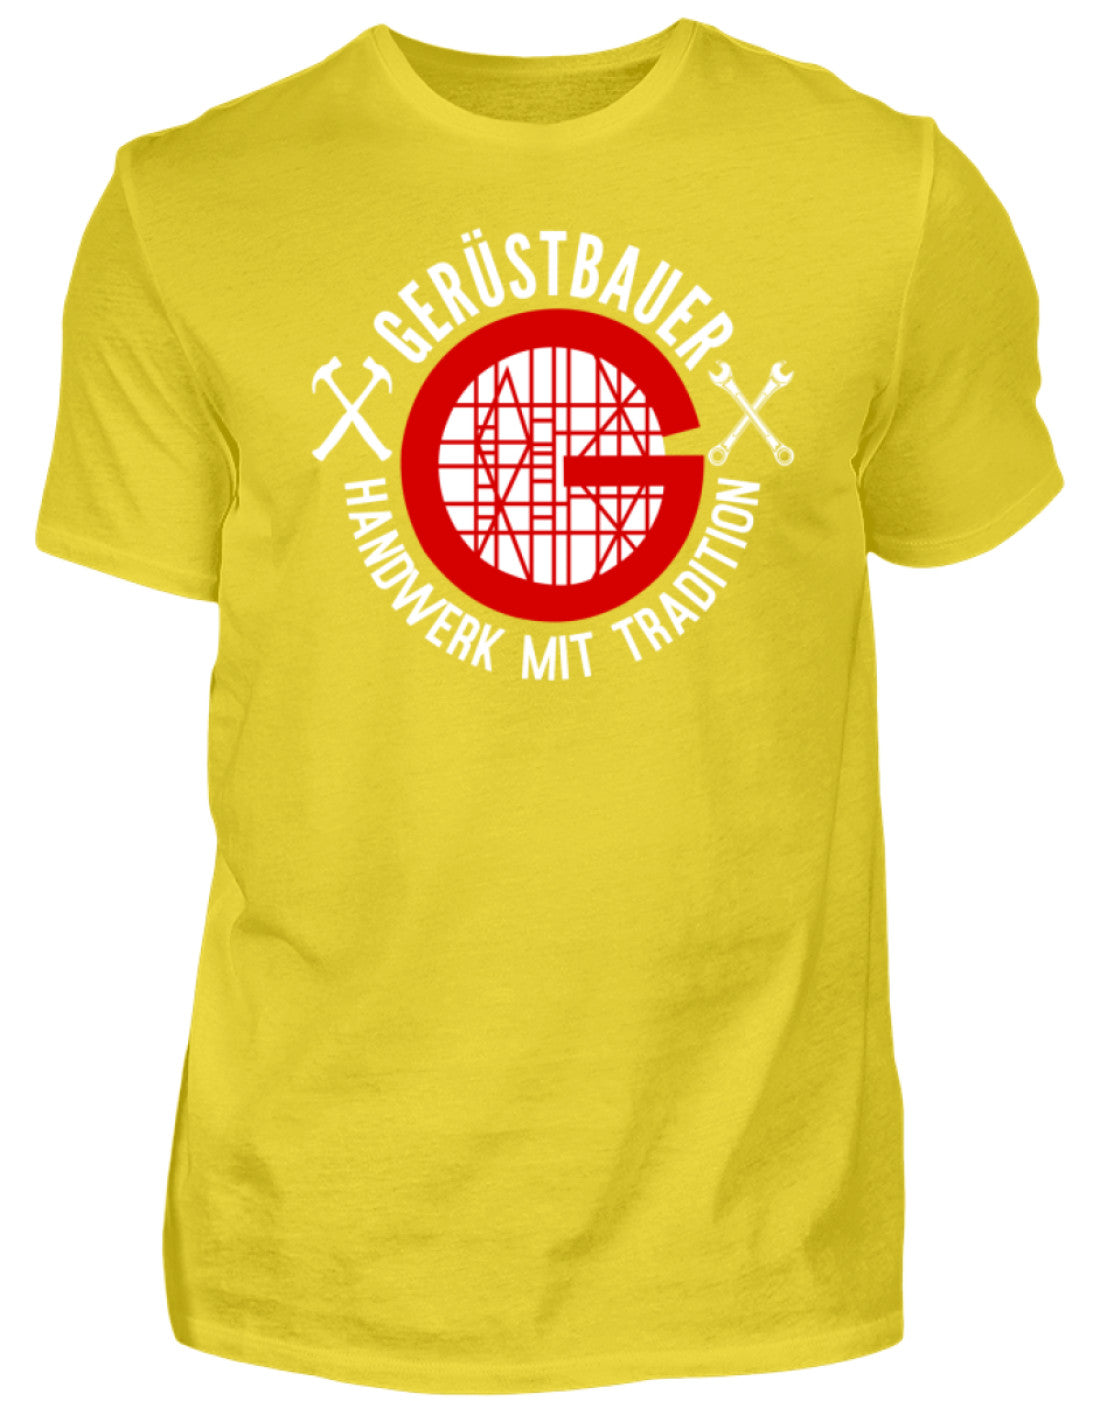 Gerüstbauer T-Shirt / Handwerk mit Tradition €21.99 Gerüstbauer - Shop >>